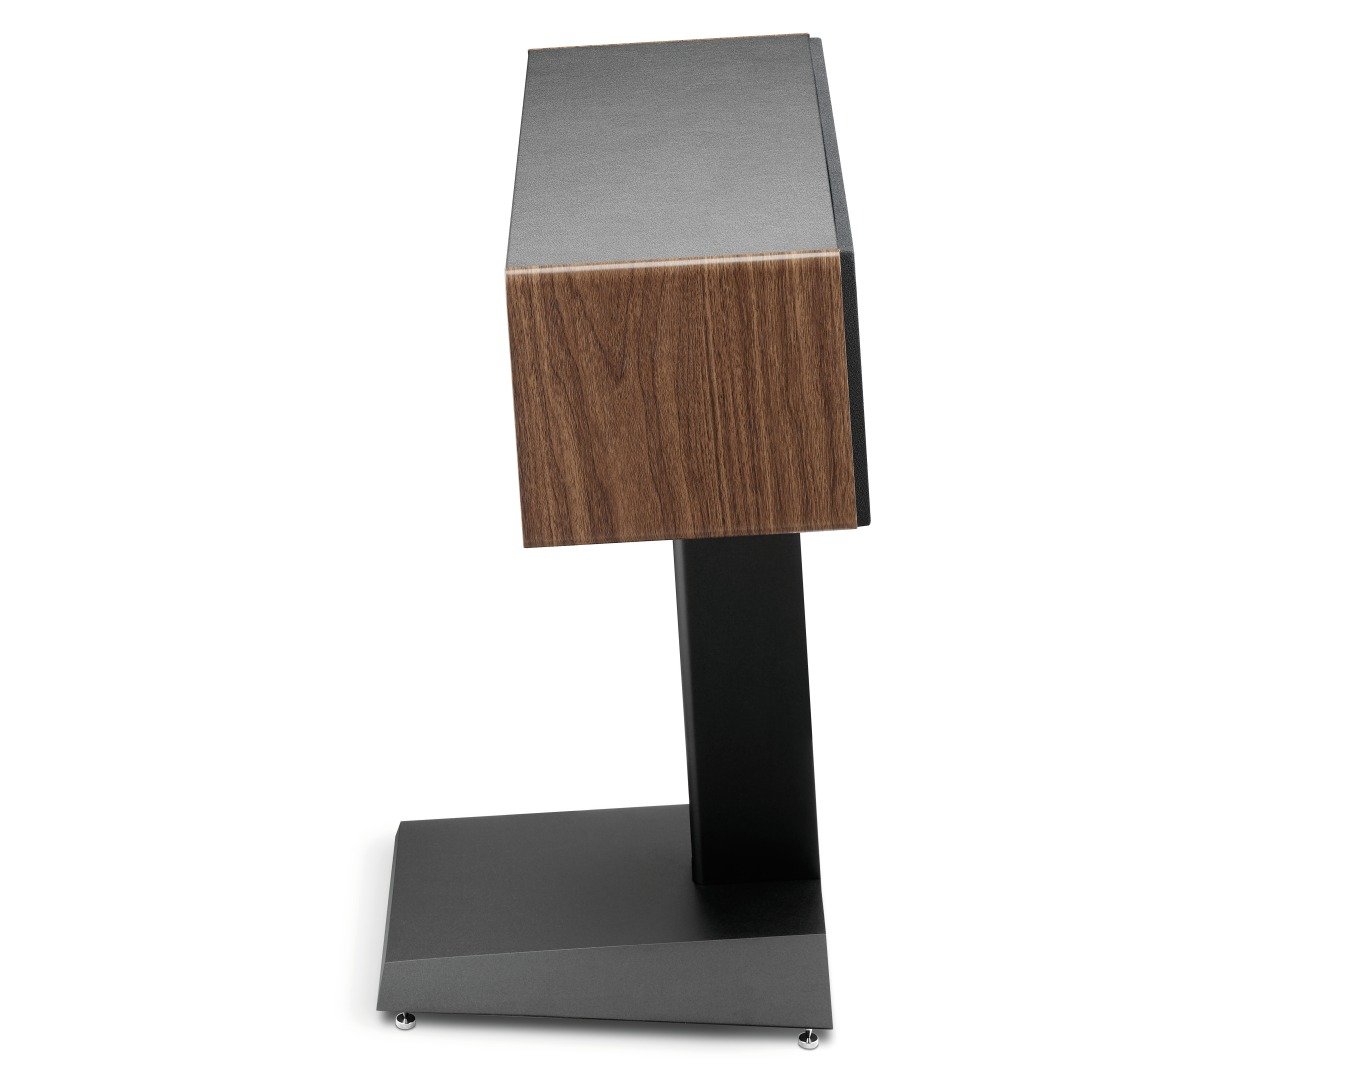 Focal Vestia Center dark wood - zijaanzicht met grill op standaard - Center speaker